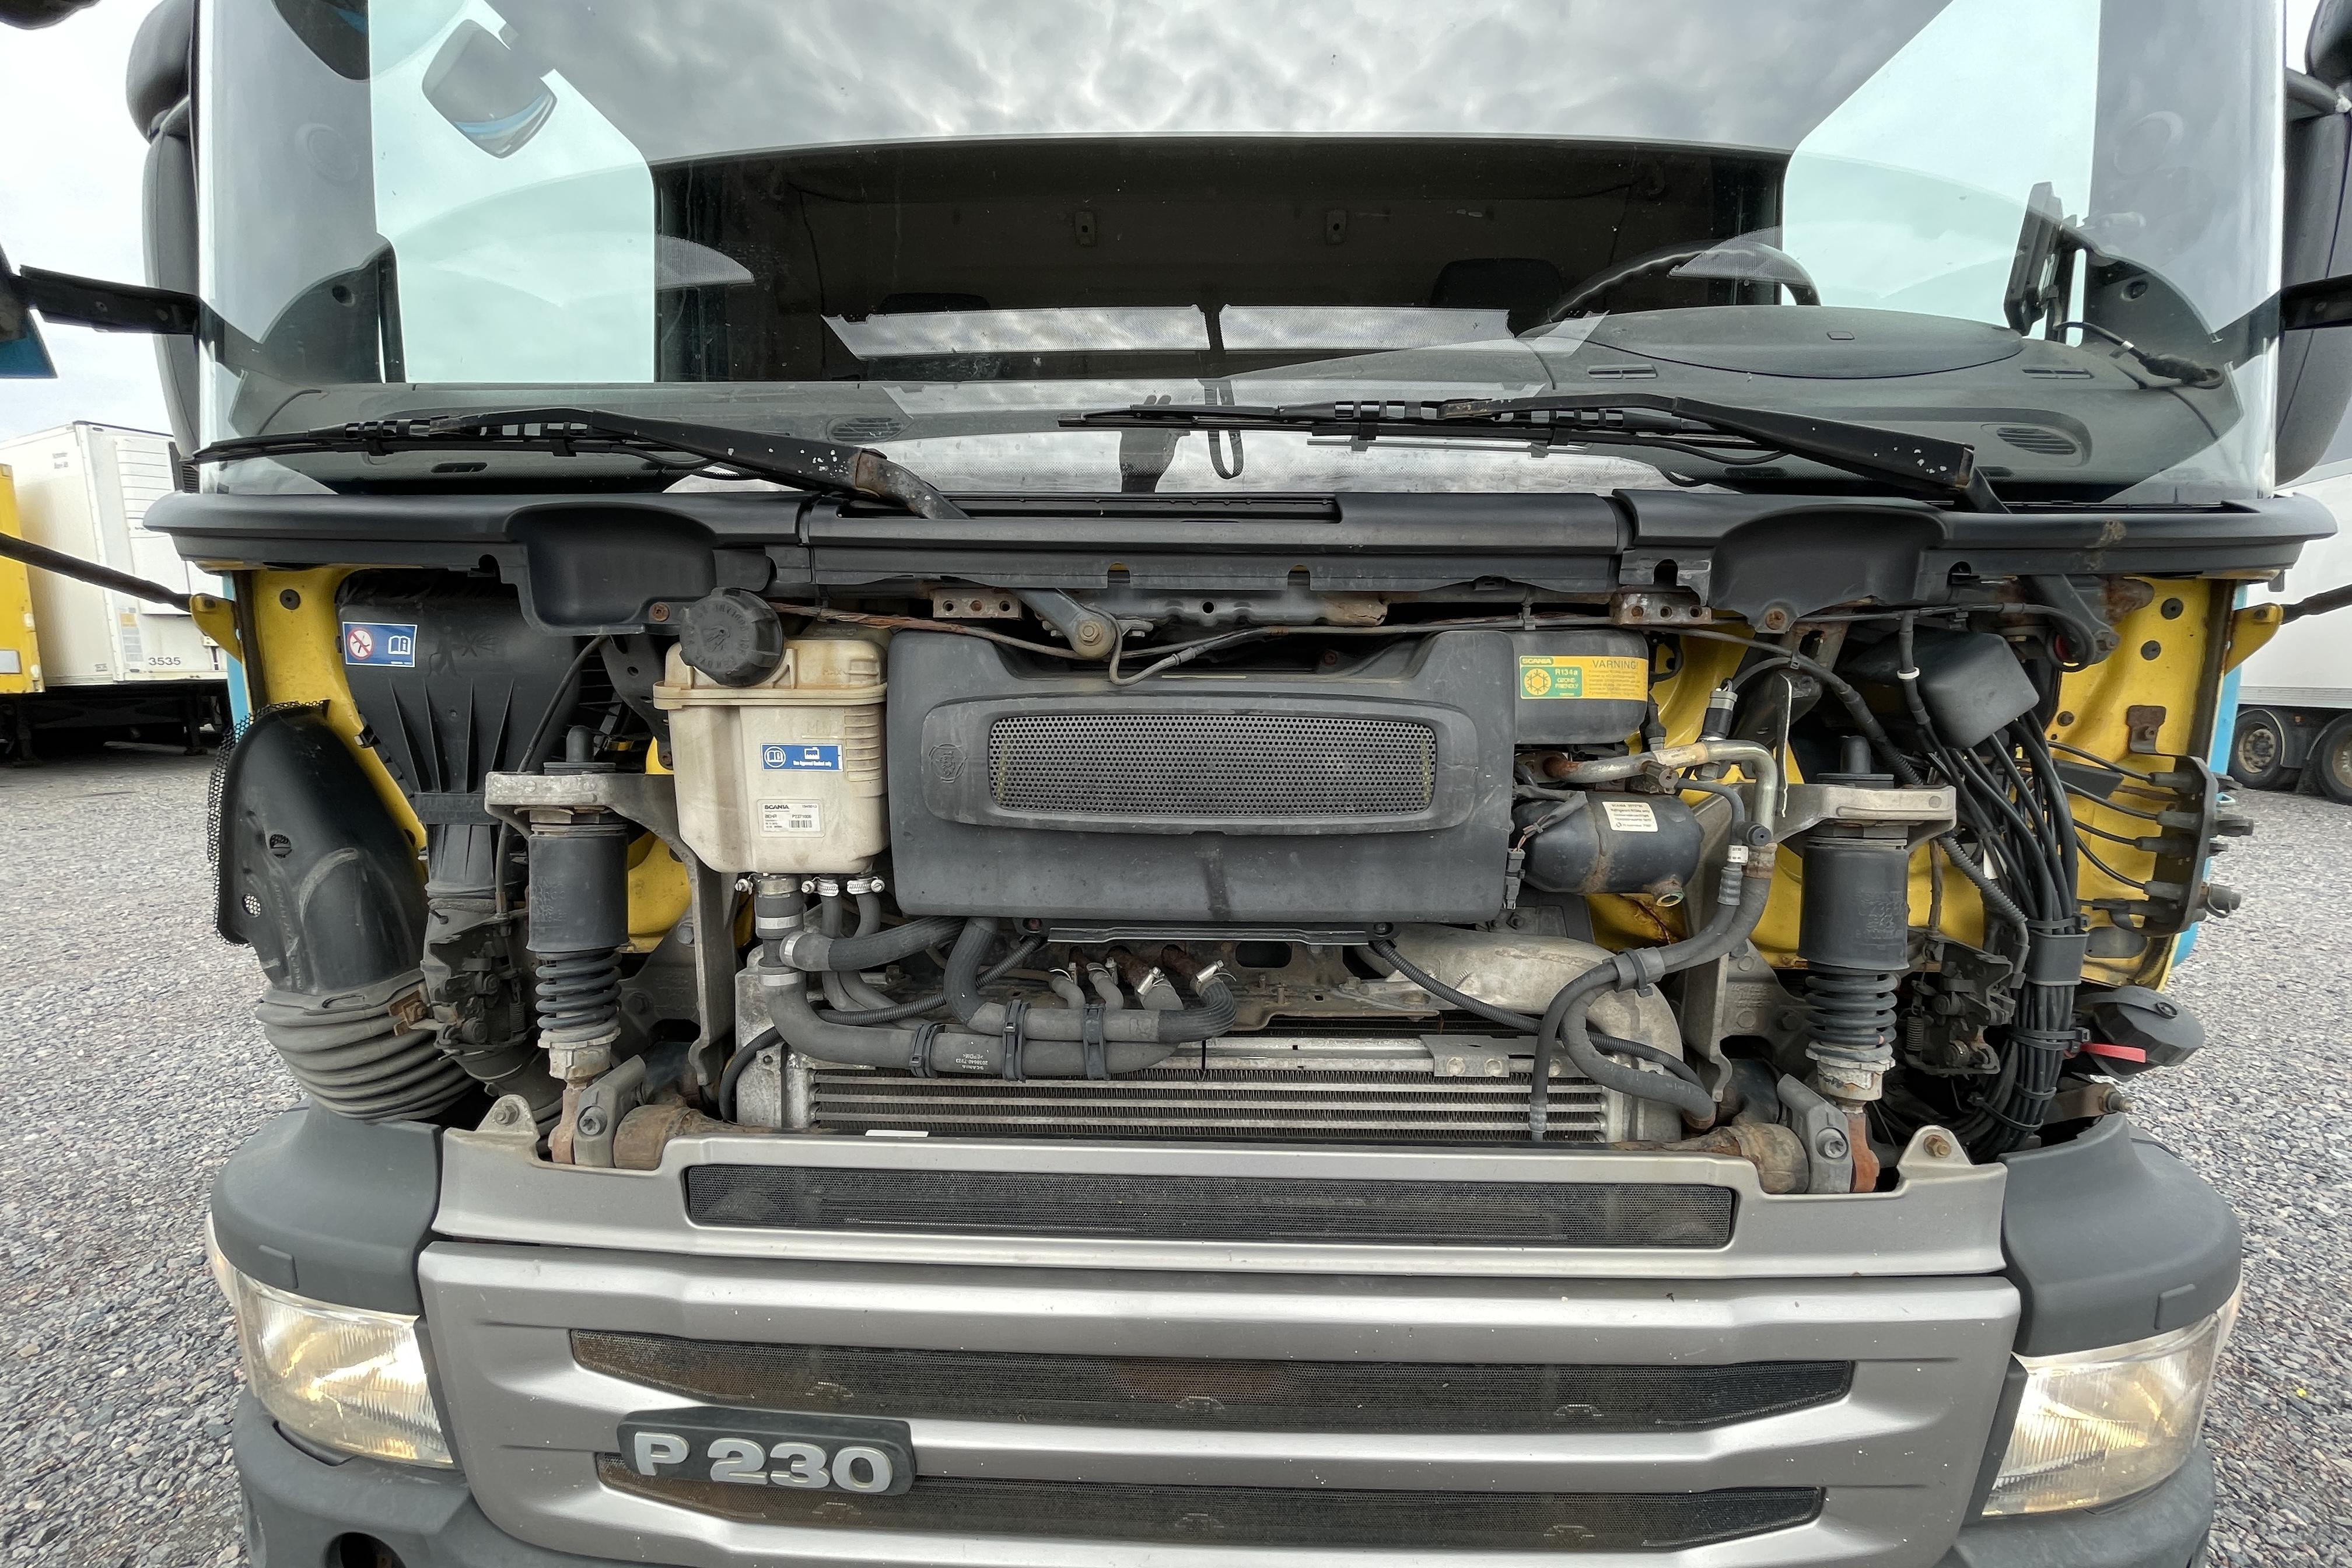 Scania P230 - 703 120 km - Automatyczna - niebieski - 2013